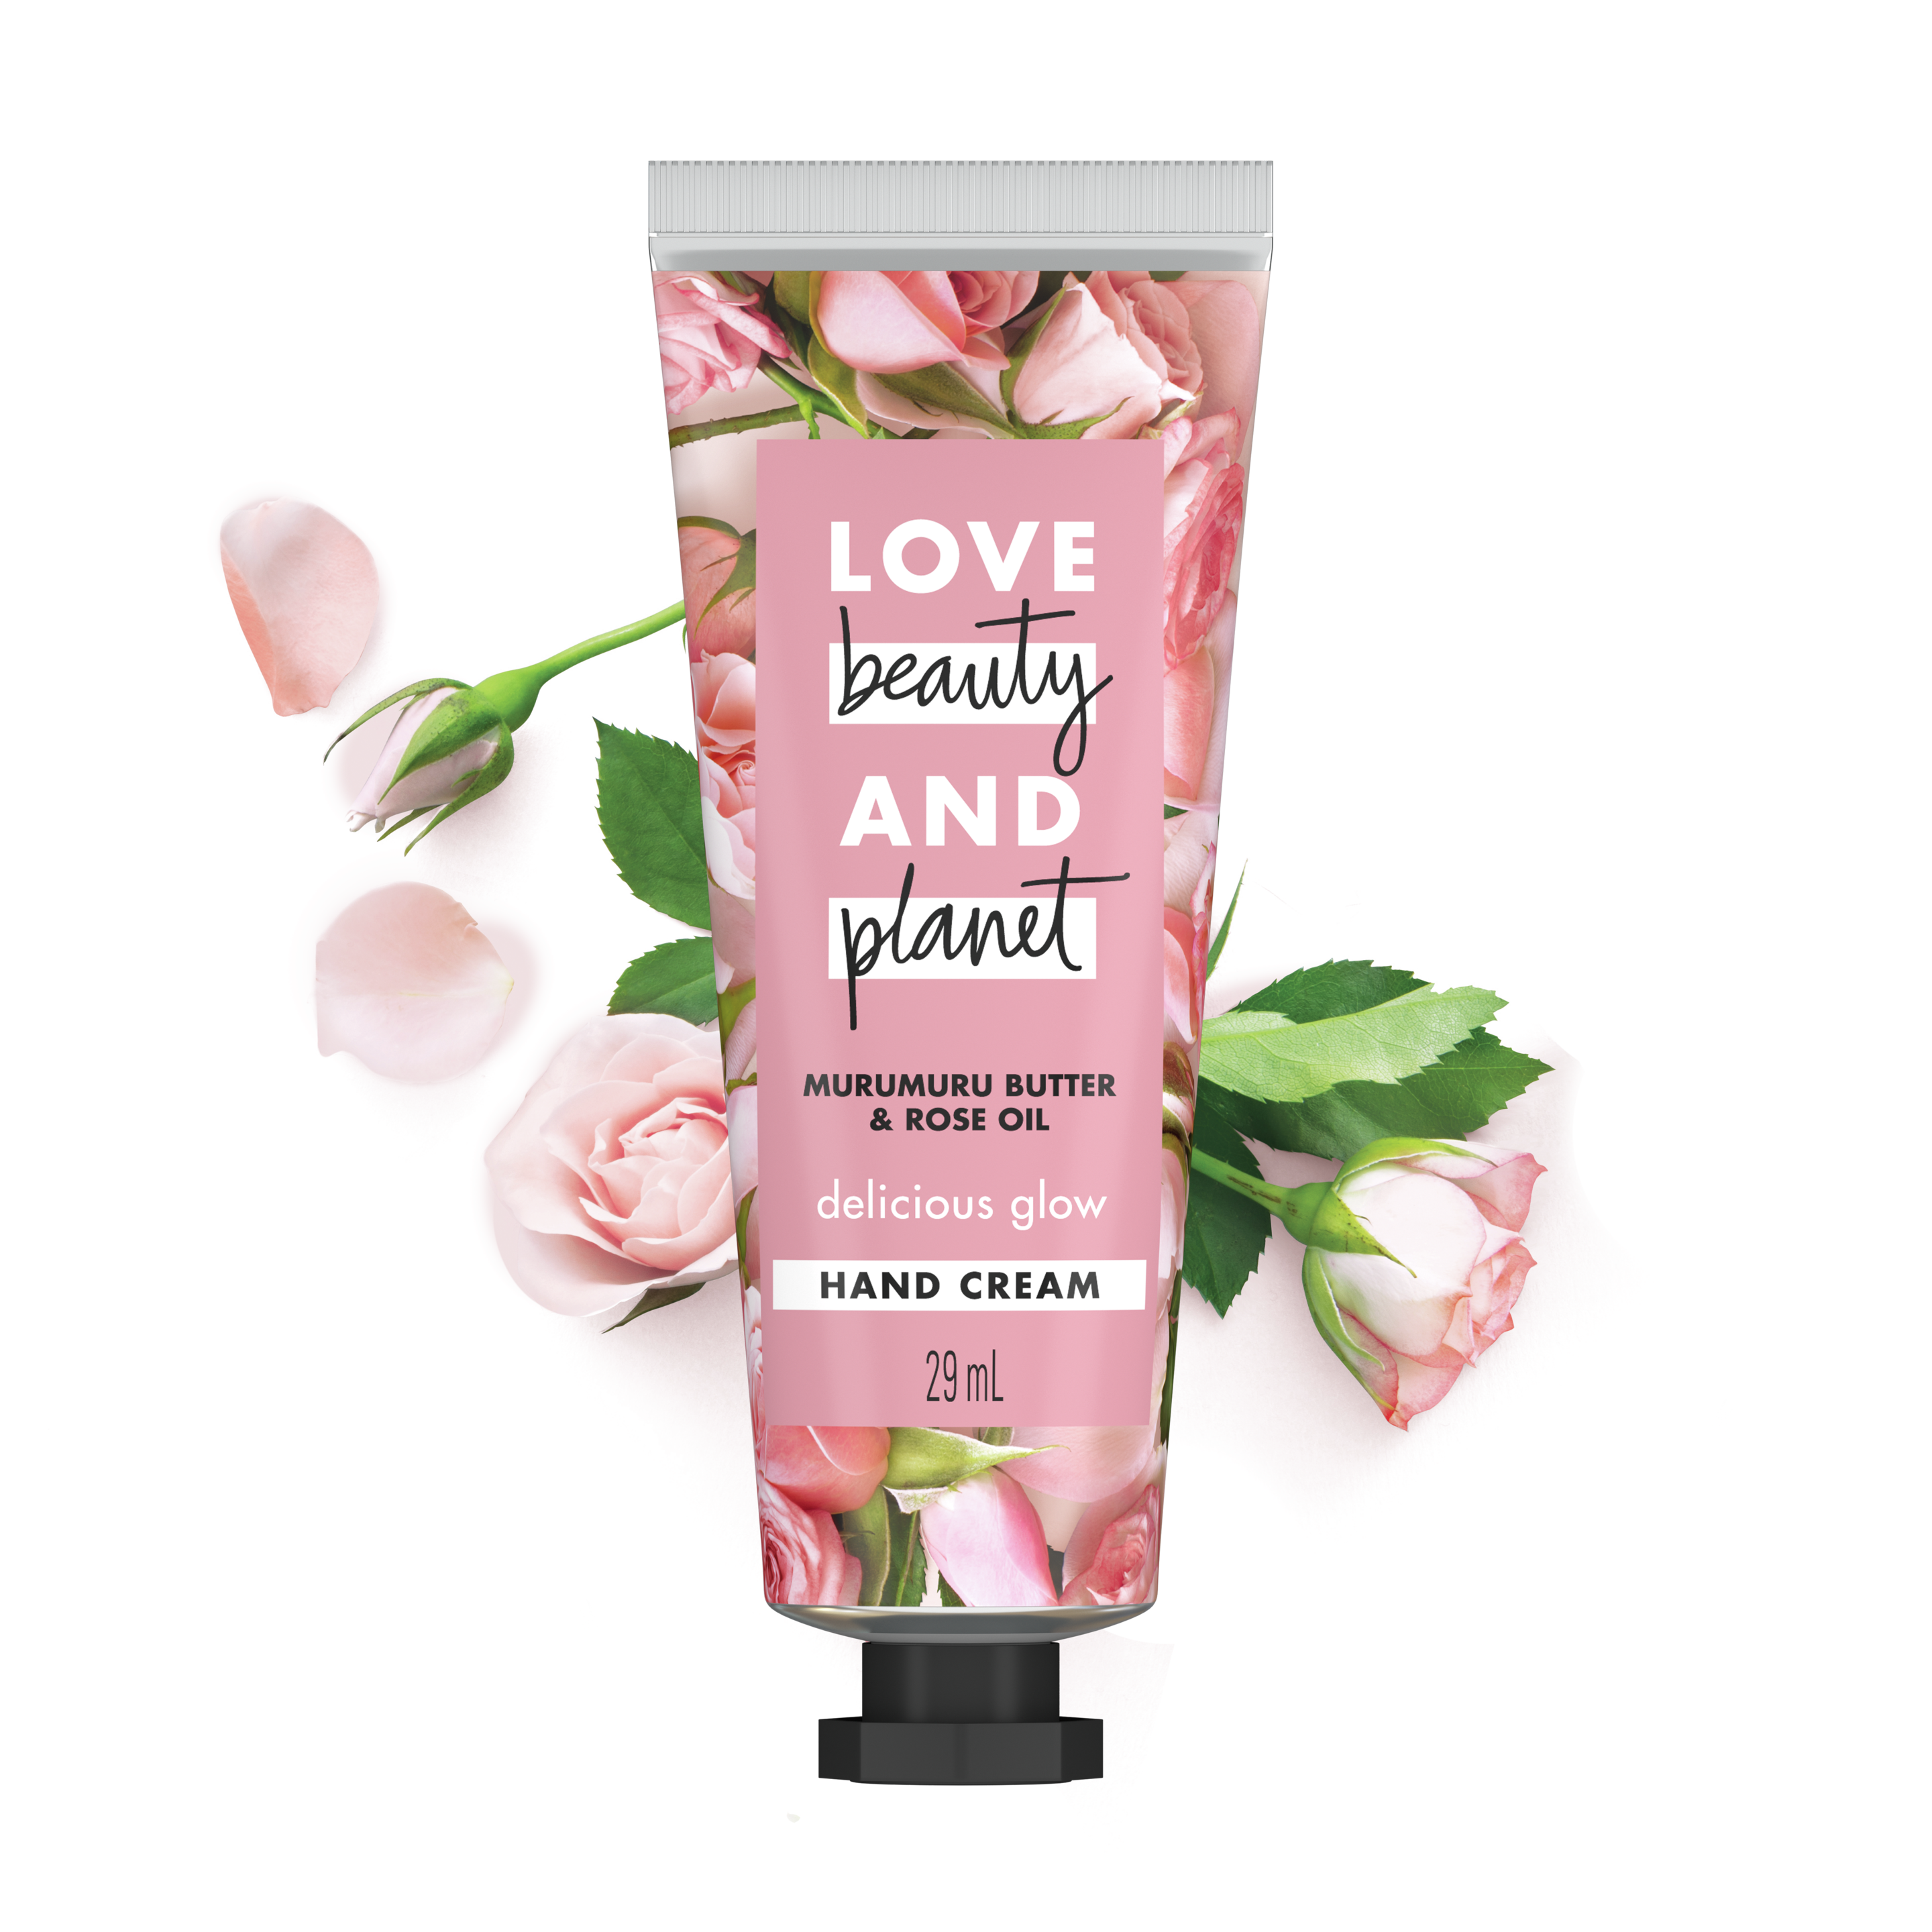 Tampak depan kemasan Love Beauty and Planet Delicious Glow Hand Cream ukuran 29 ml